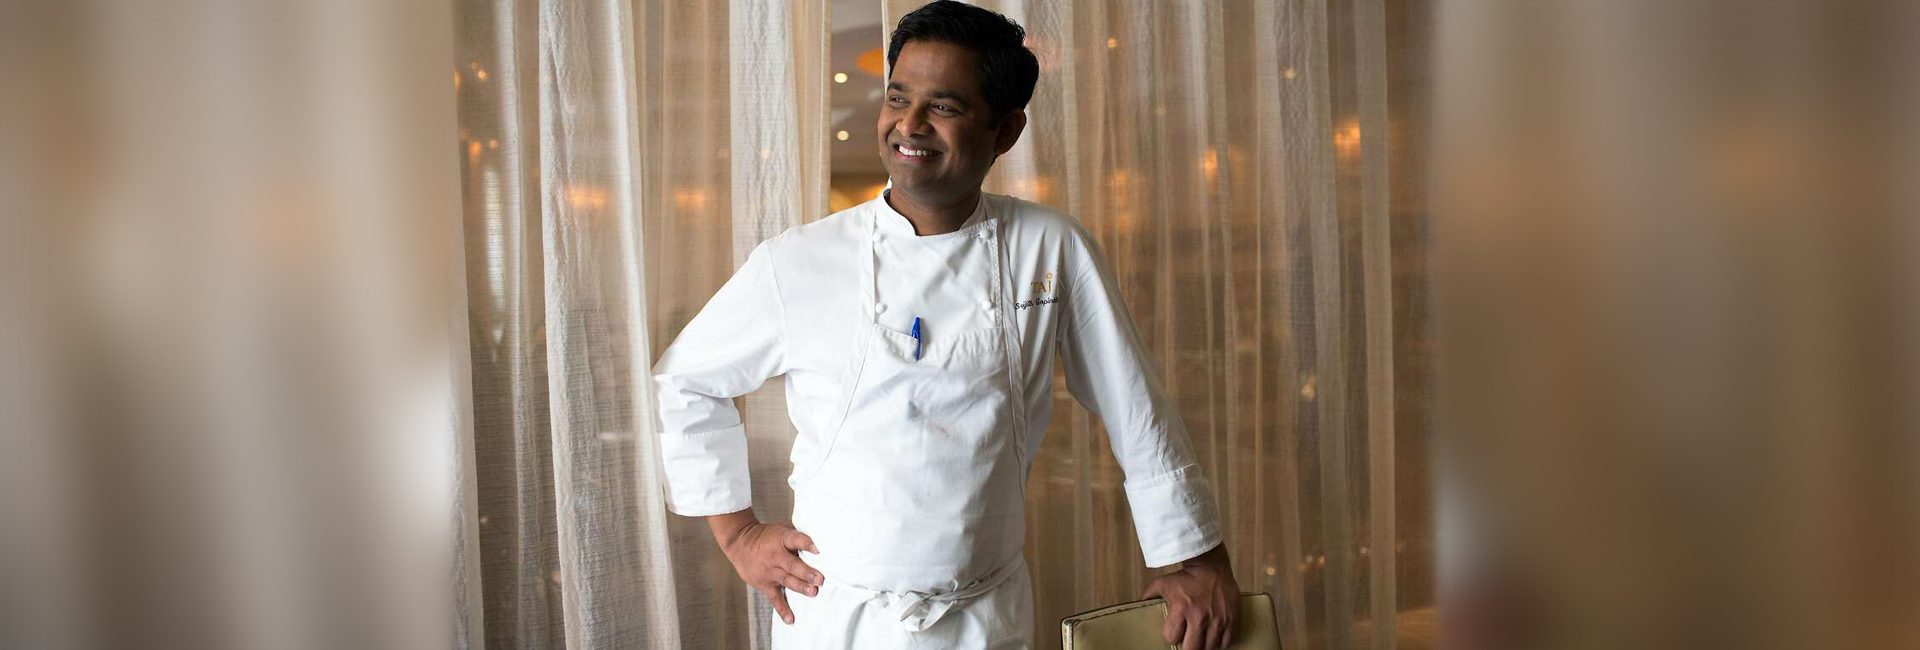 Индийский шеф-повар Шриджит Гопинат, обладатель звезды Мишлен, представляет миру южно-индийскую палитру специй.